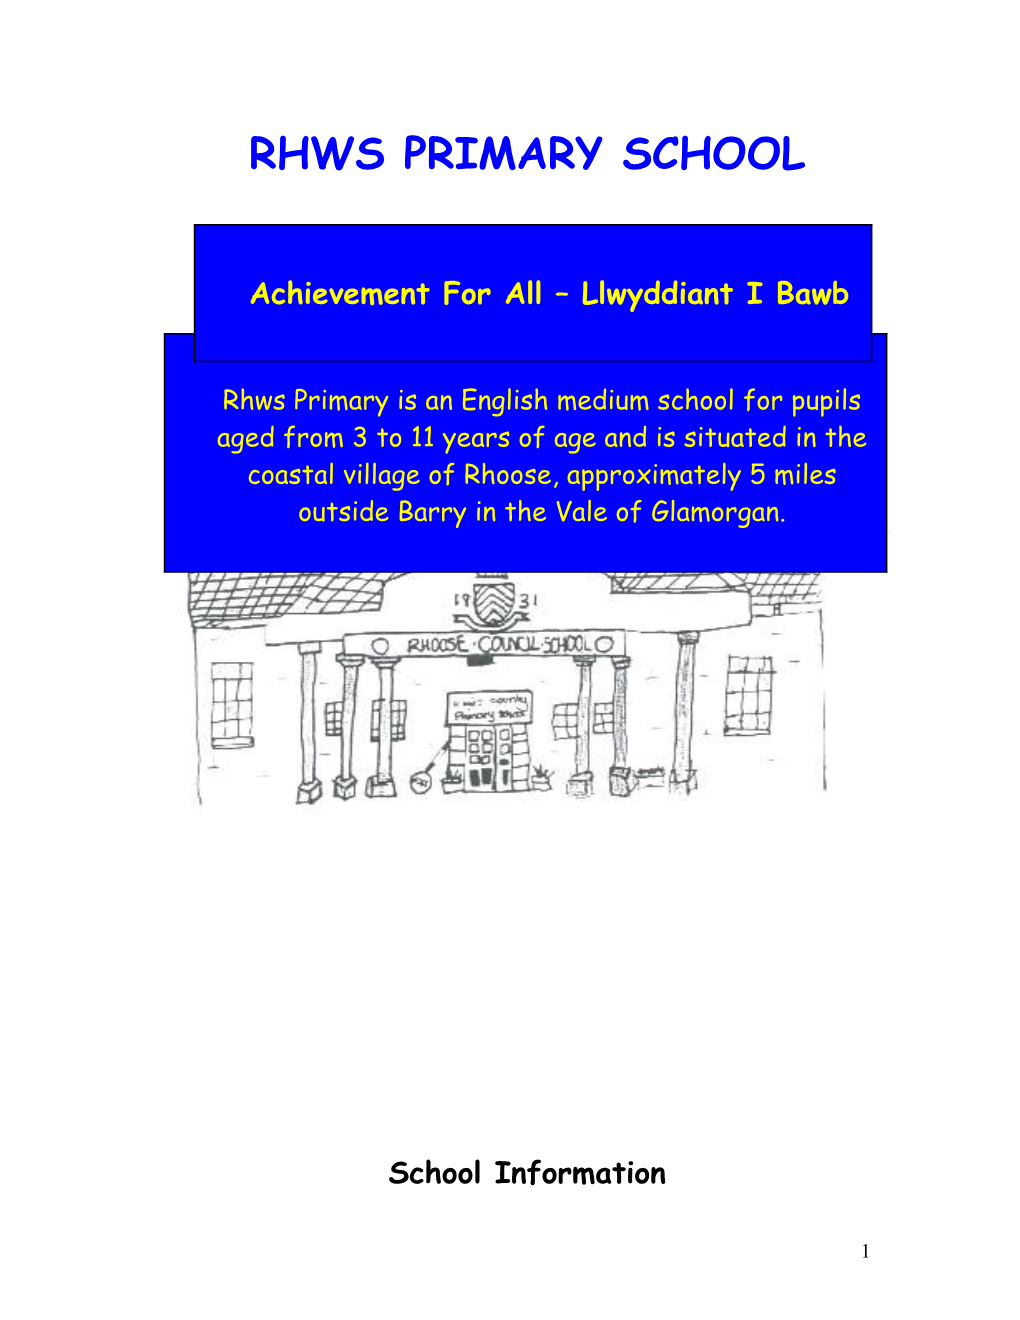 Rhws Primary School